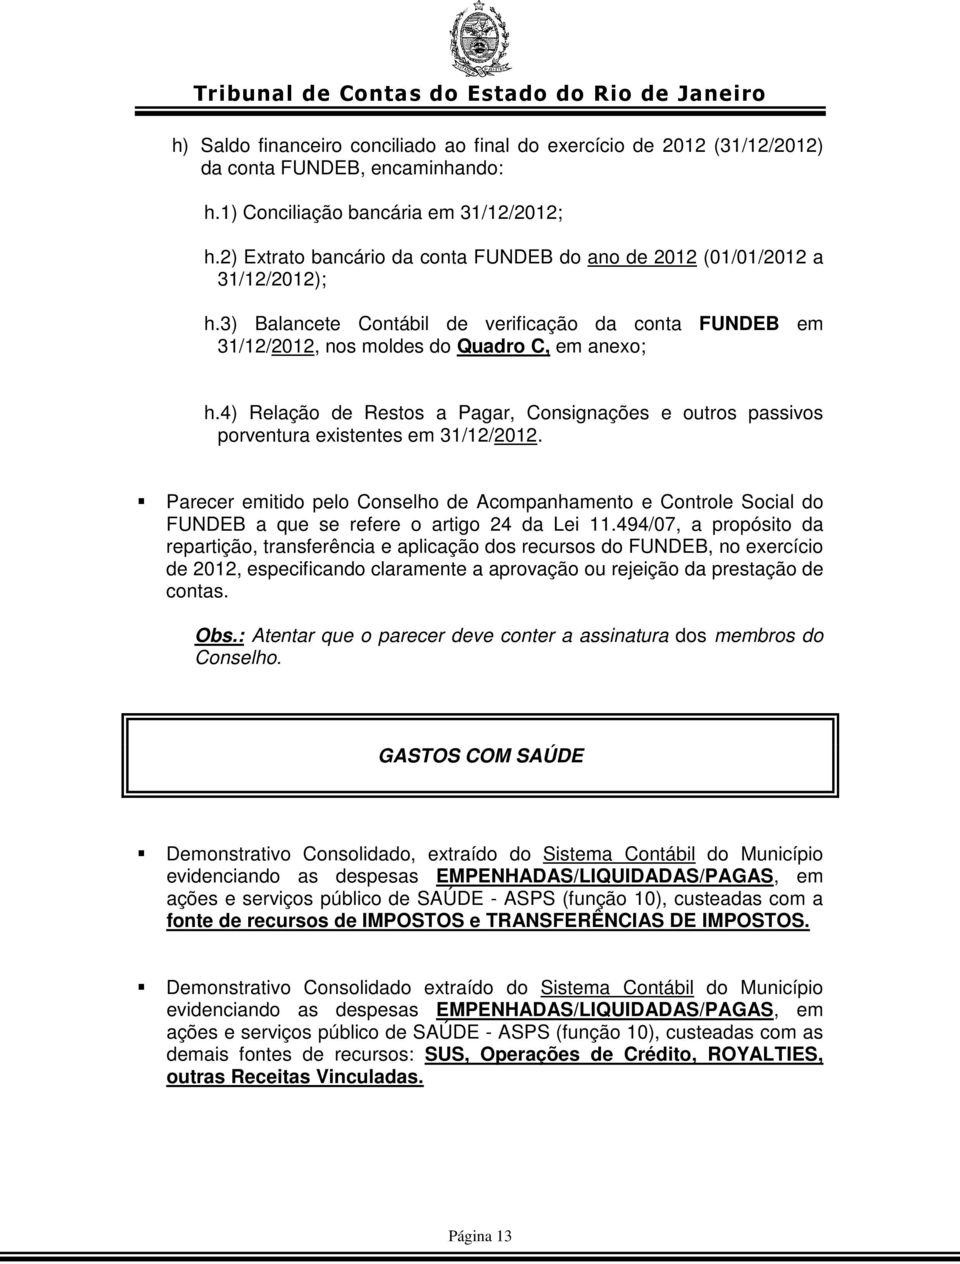 4) Relação de Restos a Pagar, Consignações e outros passivos porventura existentes em 31/12/2012.